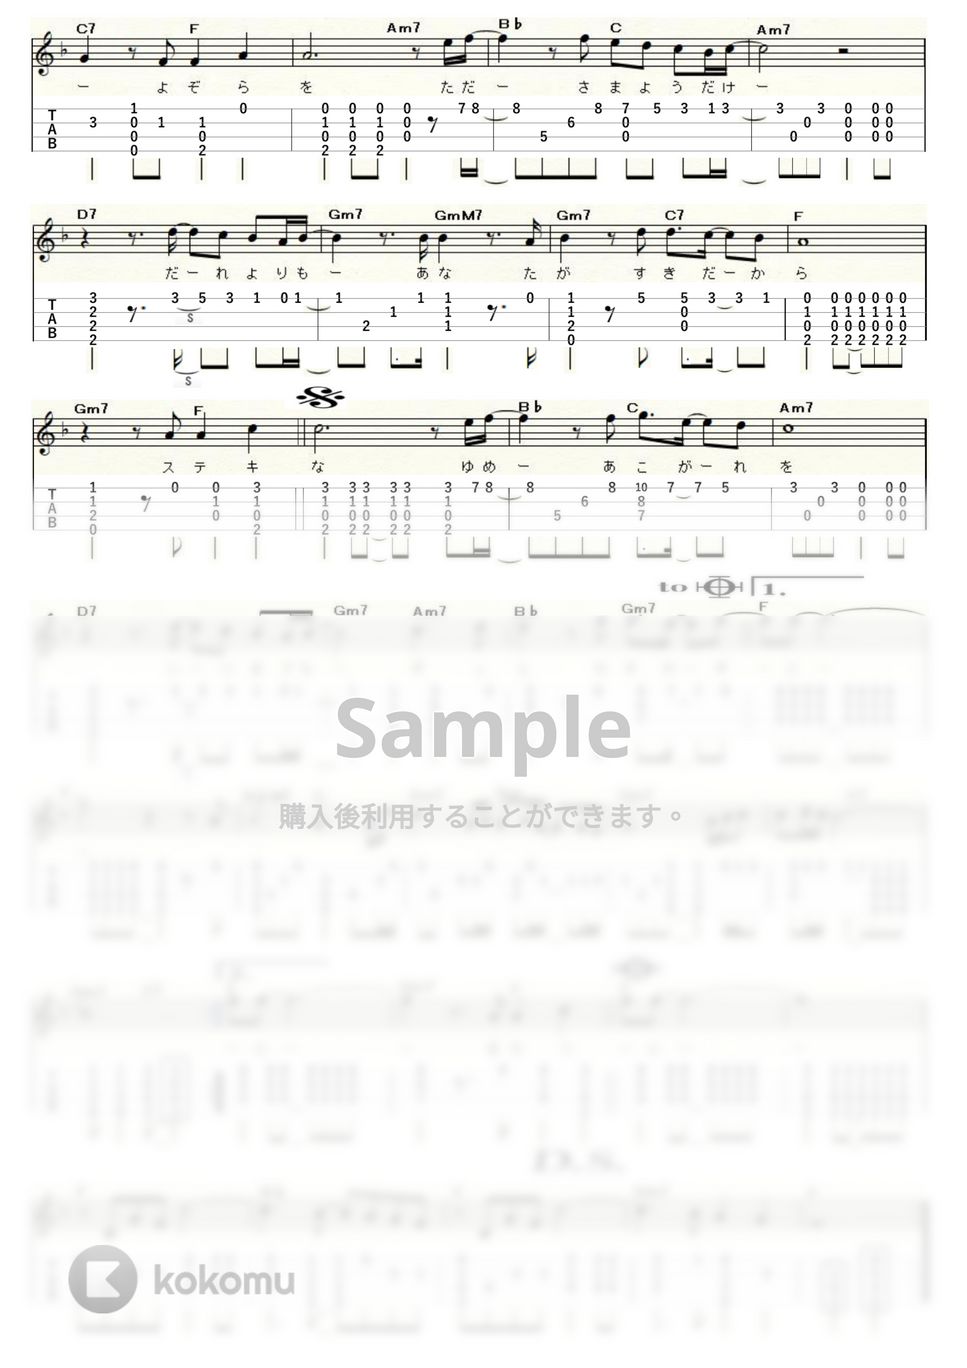 井上陽水&安全地帯 - 夏の終りのハーモニー (ｳｸﾚﾚｿﾛ / High-G,Low-G / 中級) by ukulelepapa